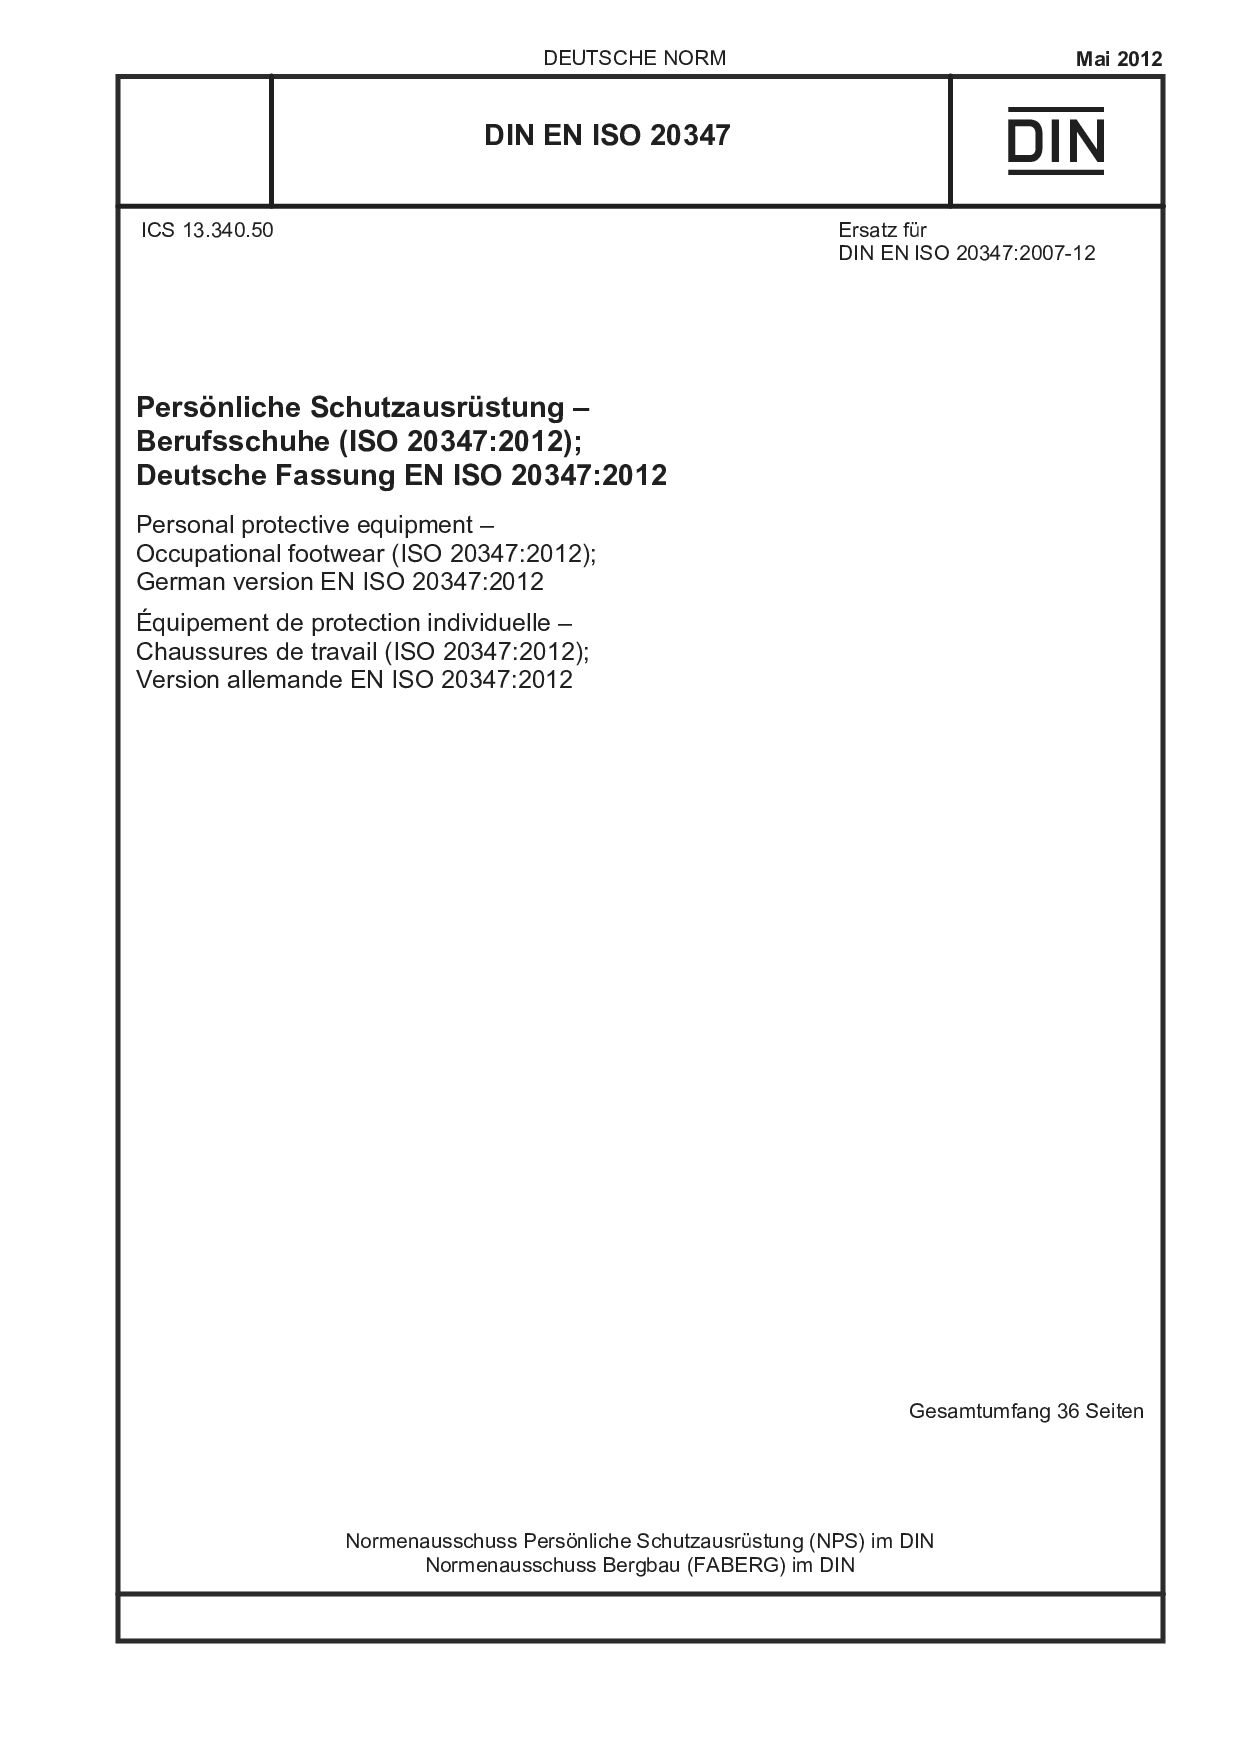 DIN EN ISO 20347:2012